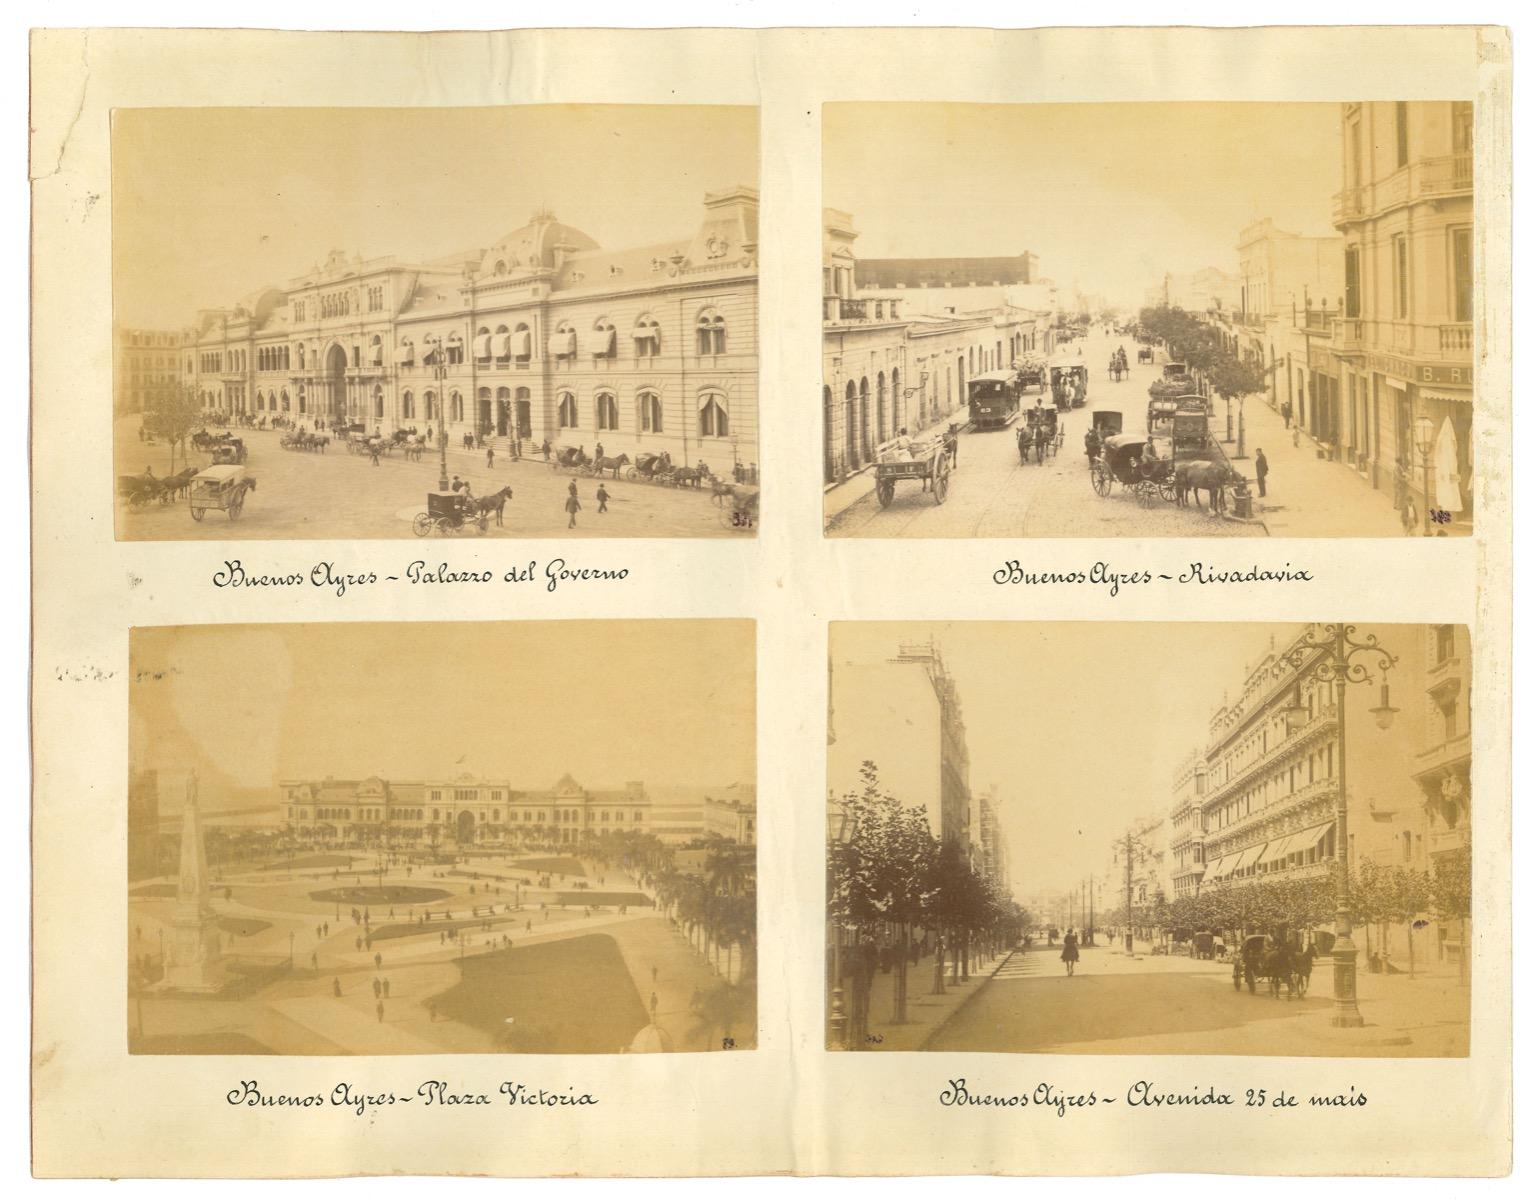 Unknown Landscape Photograph - Ancient Views of Buenos Aires - Argentina - Original Vintage Photos - 1880s